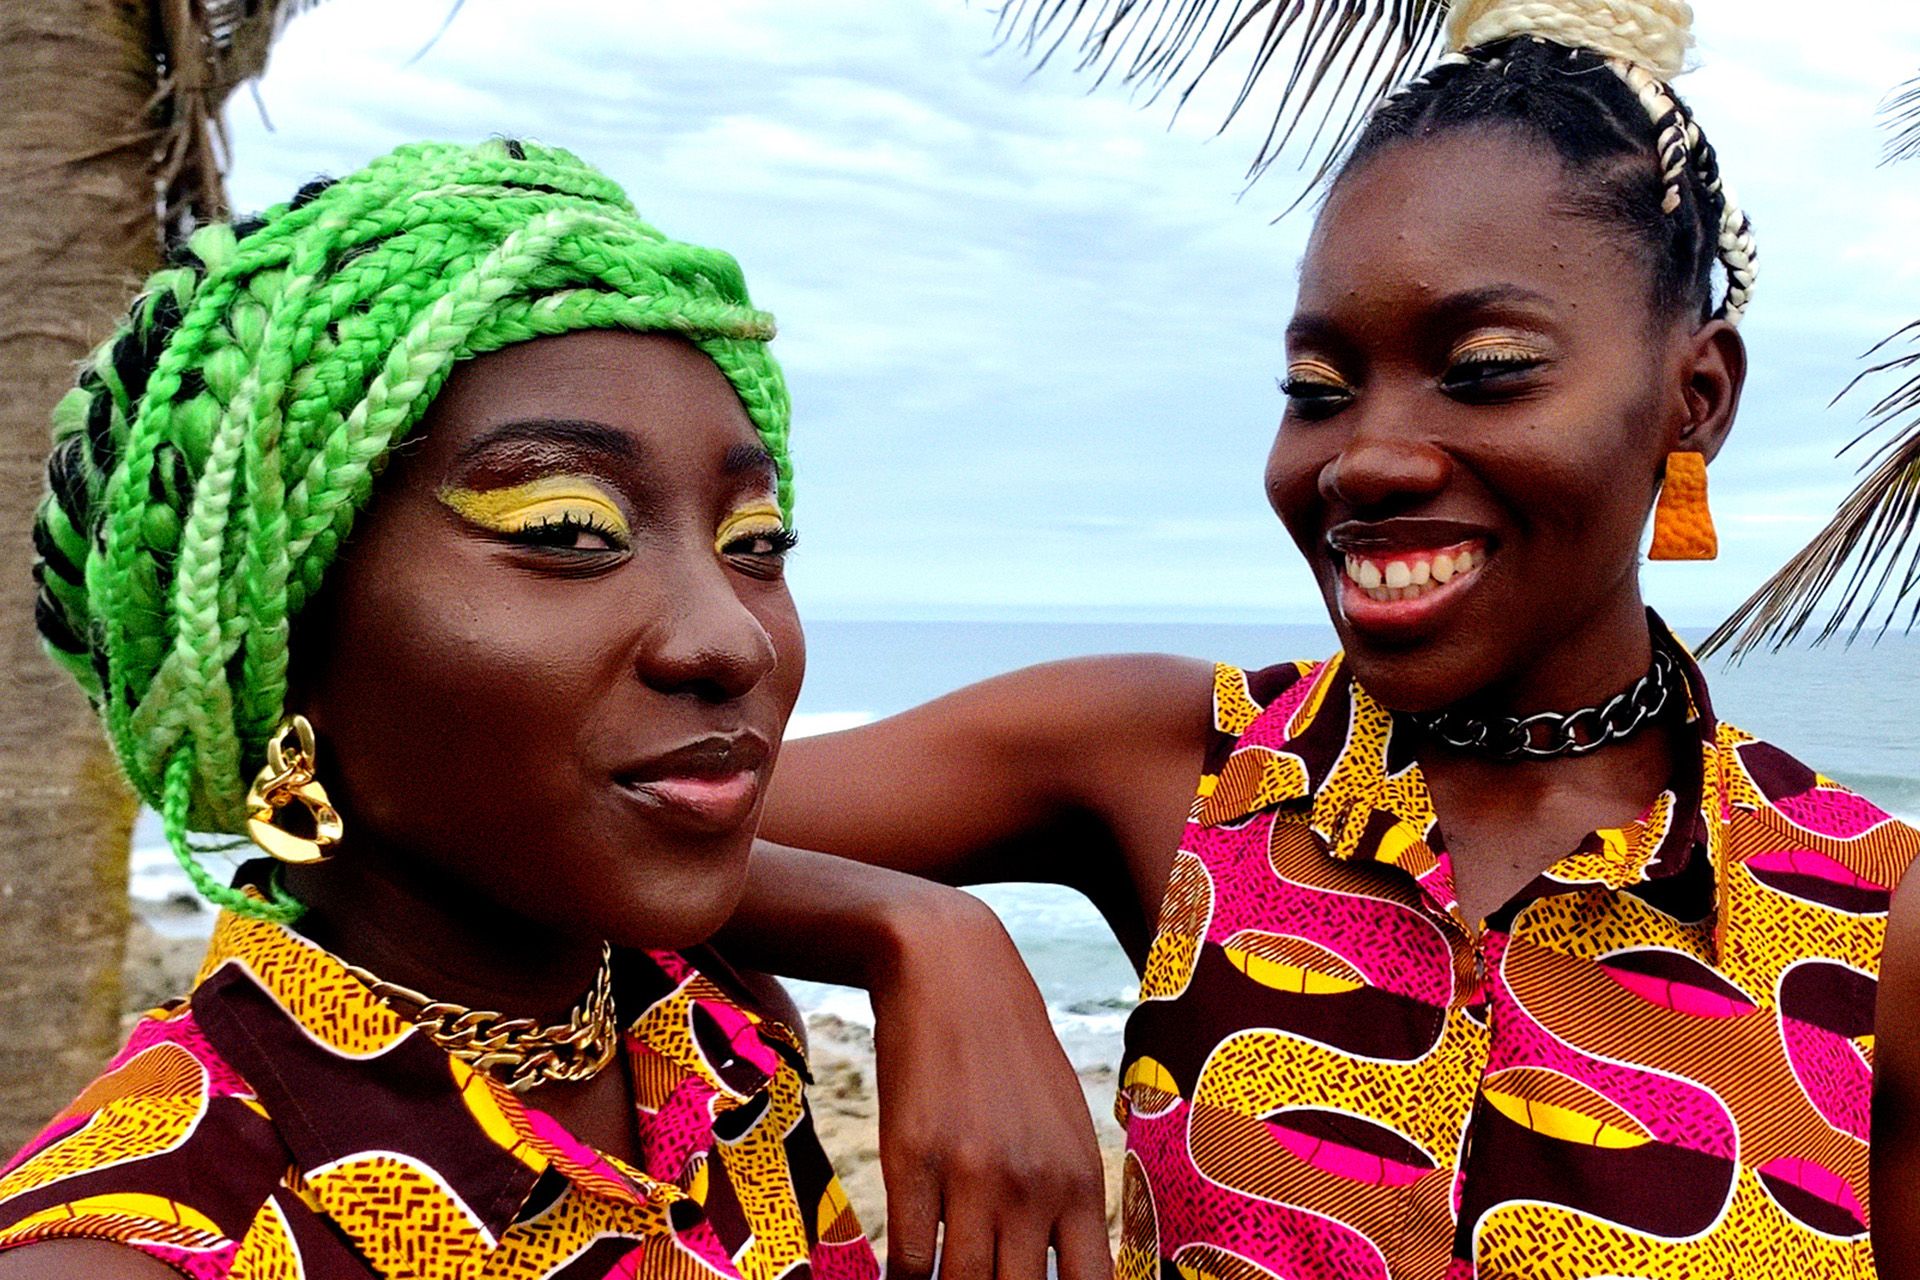 Dos mujeres con ropas de colores brillantes frente a una palmera